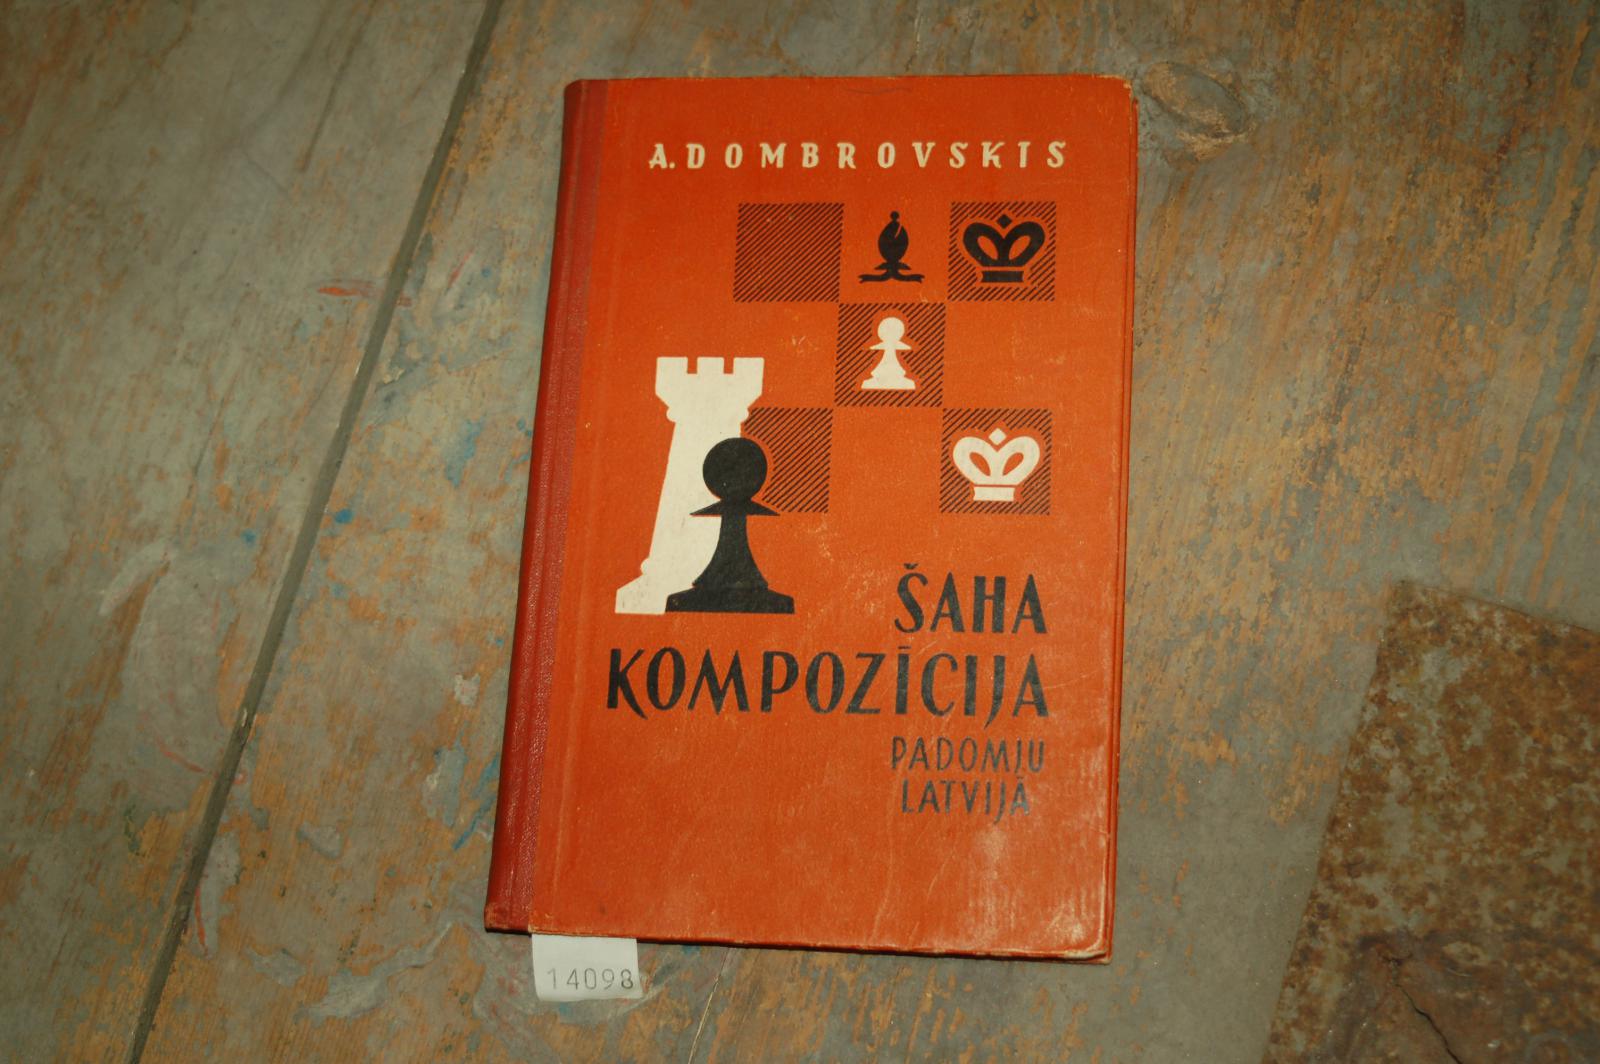 Dombrovskis A.  Sacha Kompozicija padomu Latvija (Das Schachproblem in Sowjetlettland) 